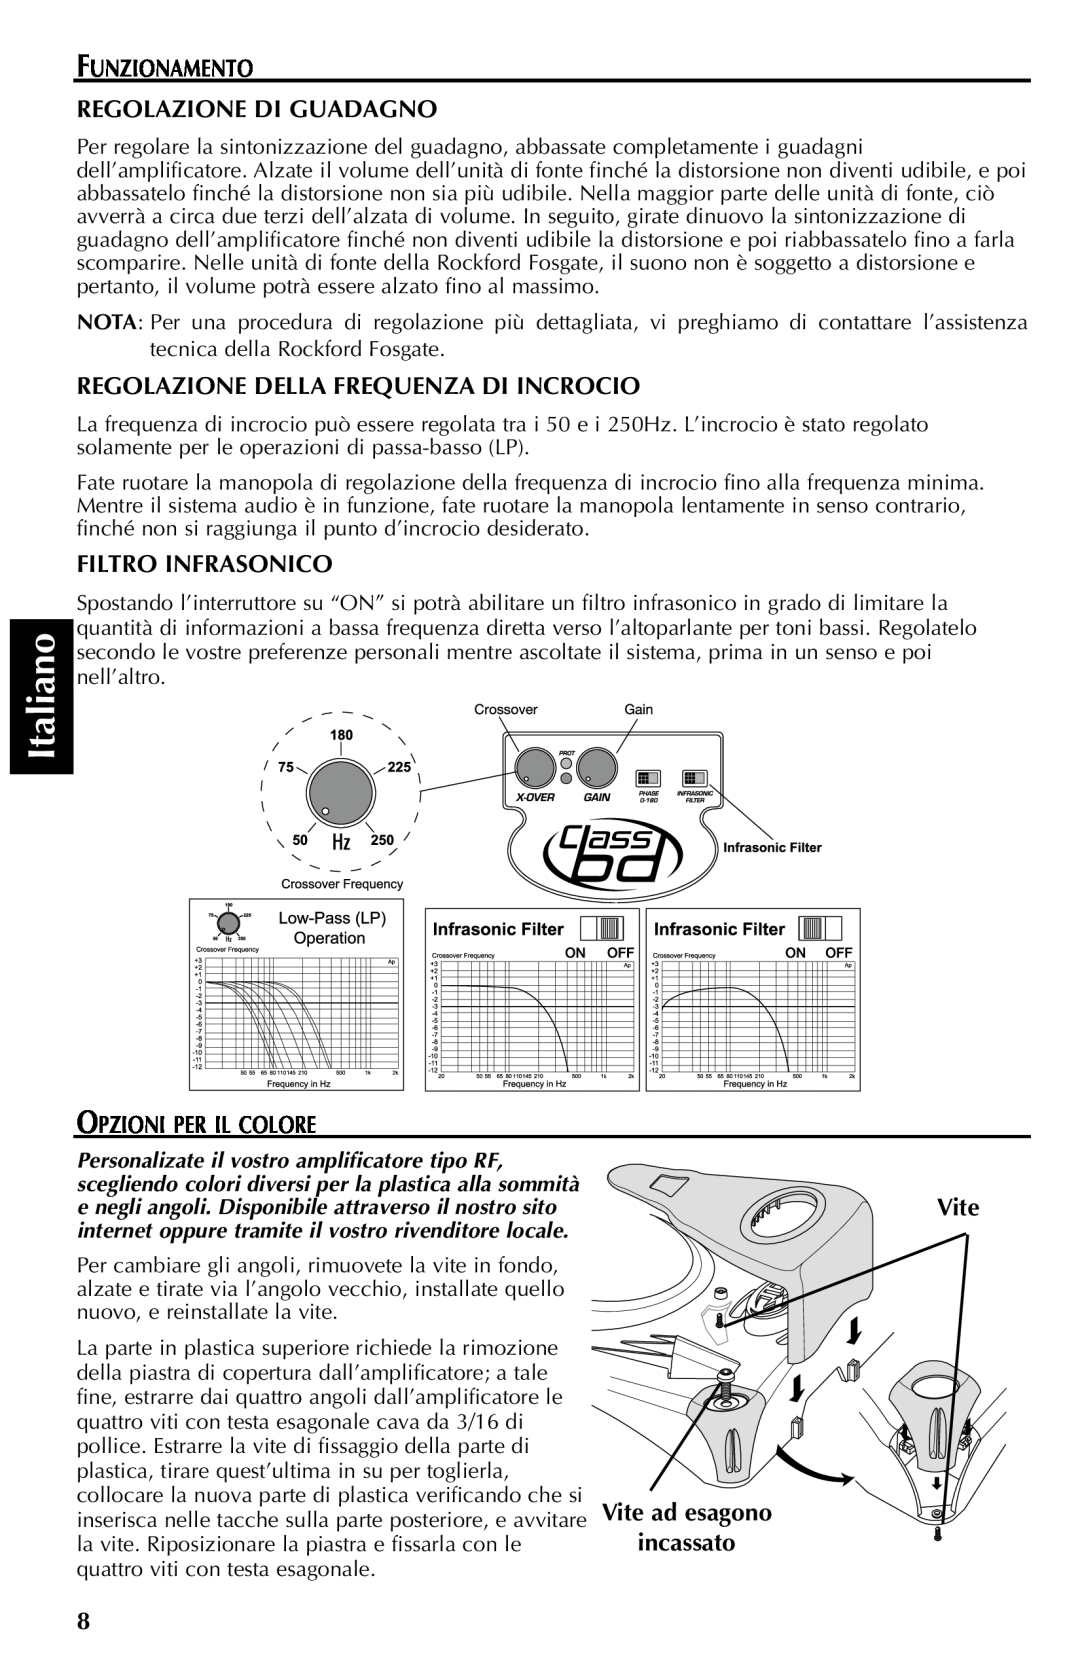 Rockford Fosgate FFX6 manual Italiano, Funzionamento Regolazione Di Guadagno, Regolazione Della Frequenza Di Incrocio 